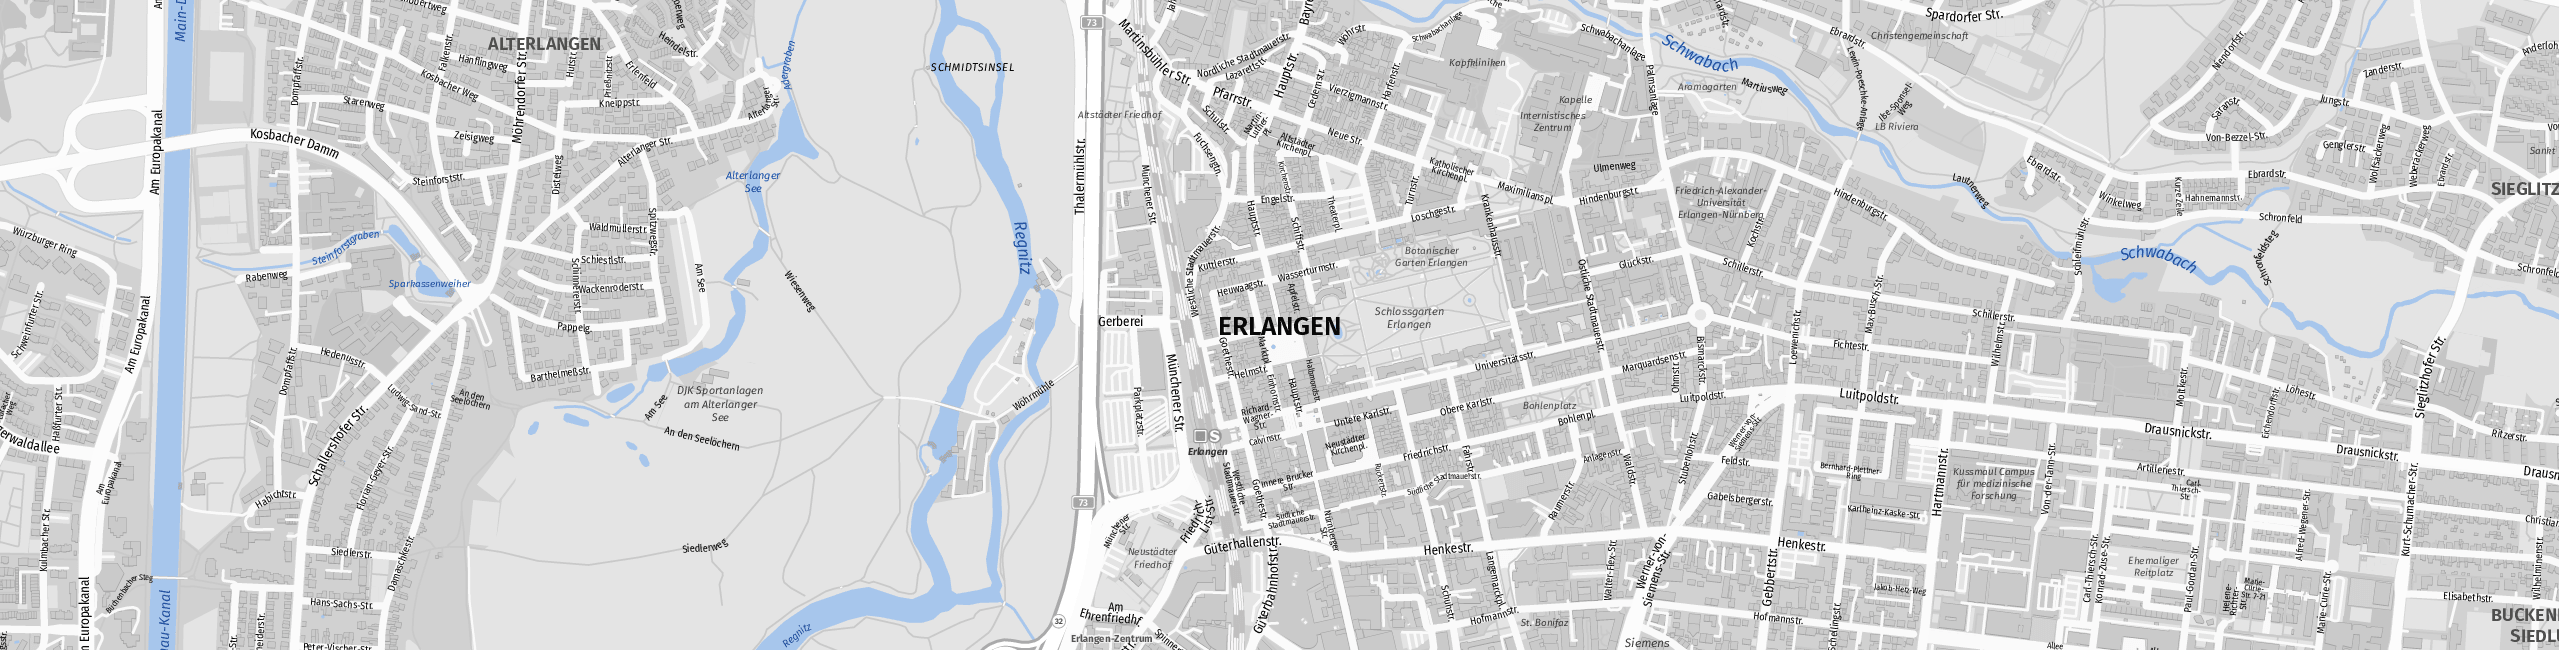 Stadtplan Erlangen zum Downloaden.